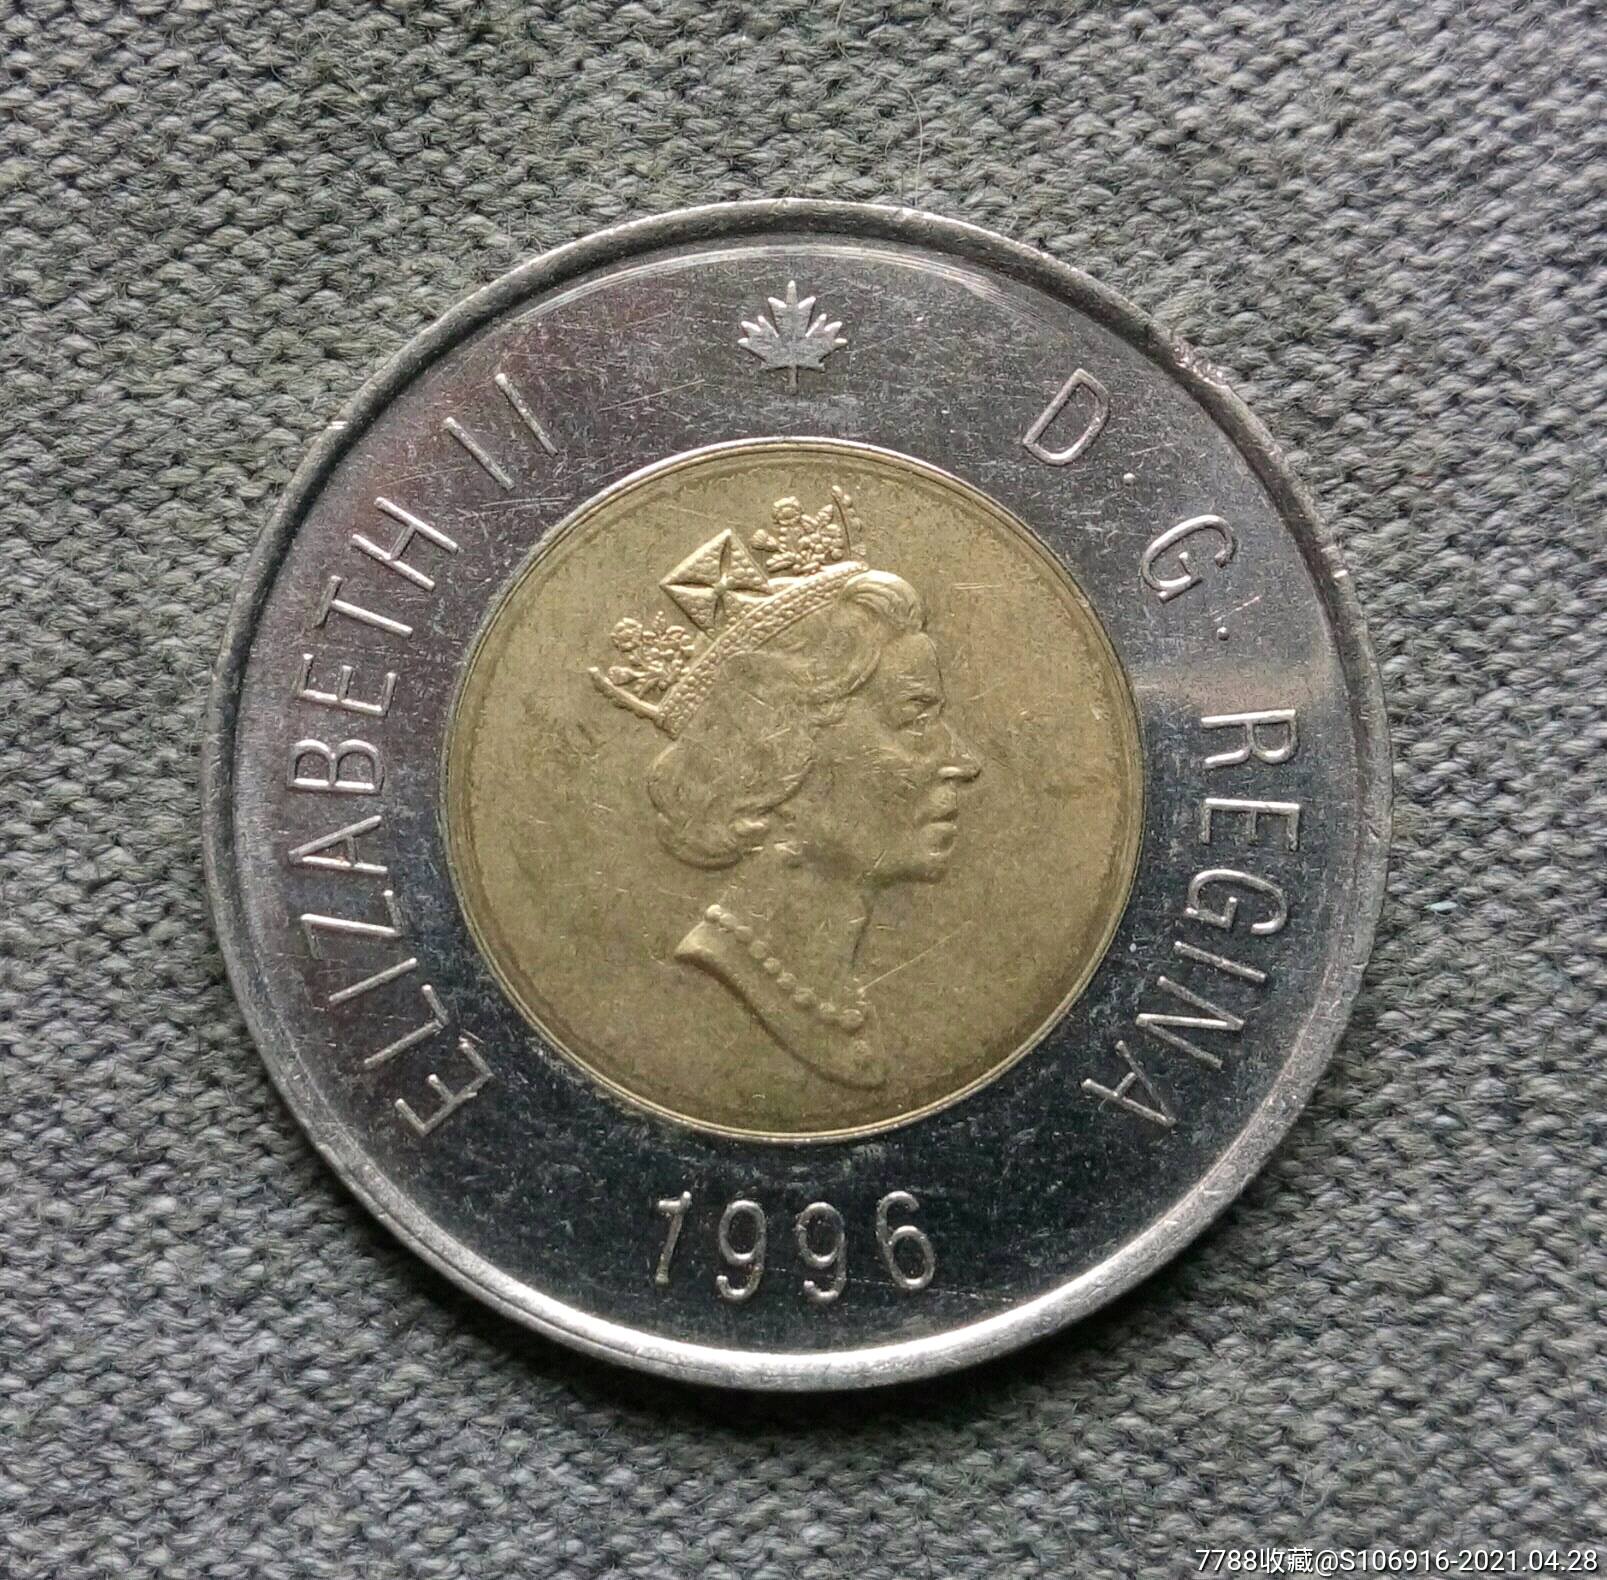 1996年加拿大2元